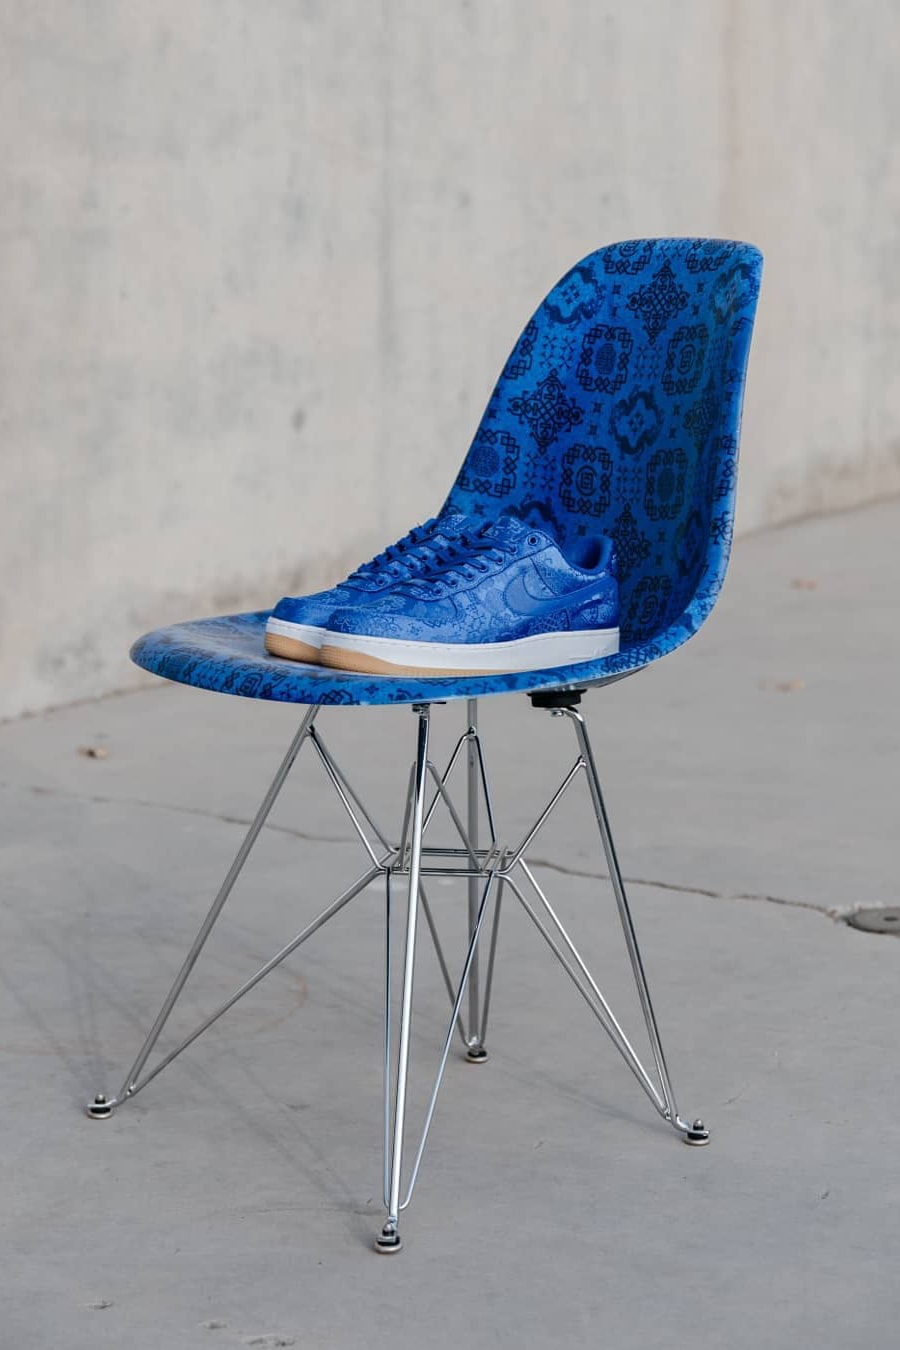 家品都要潮－CLOT x Modernica 聯手限量謹製「藍絲綢」貝殼椅